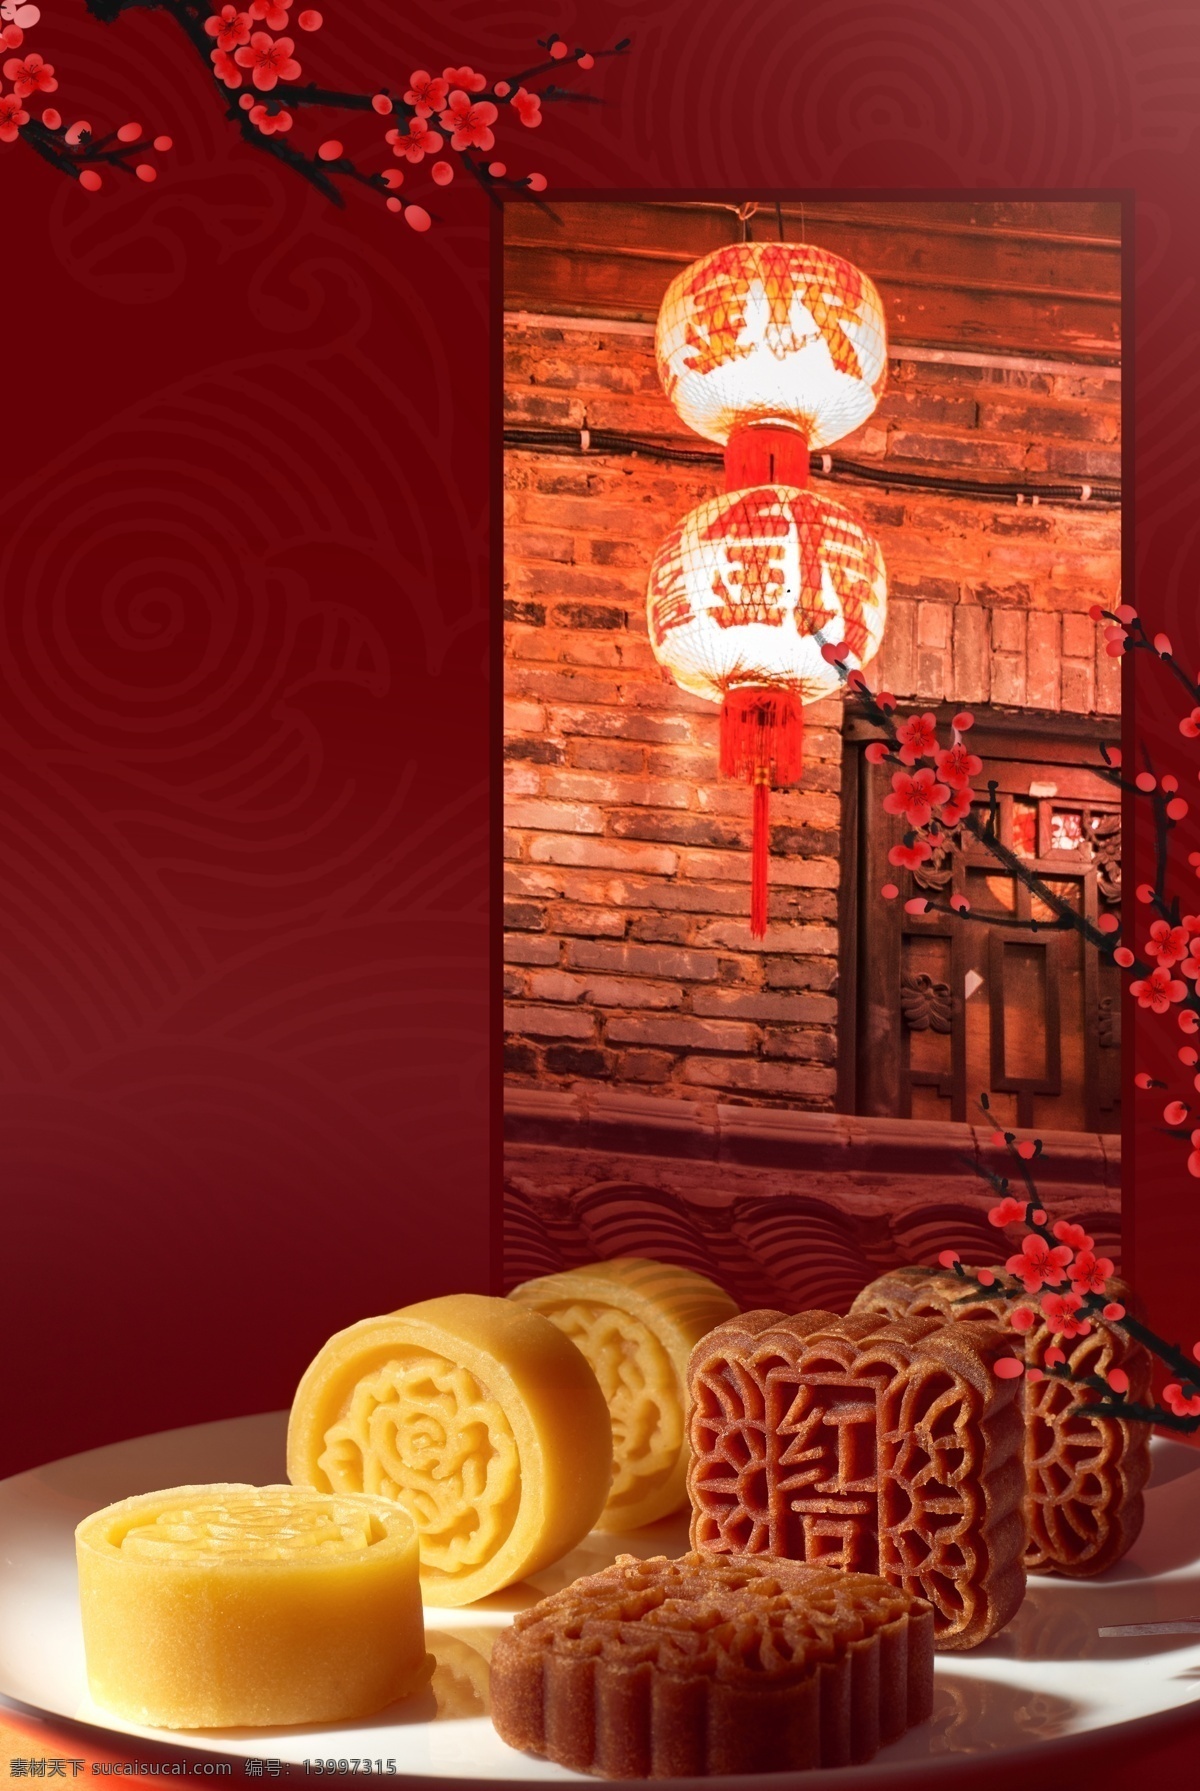 简约 中国 风 糕点 美食 大气 背景 海报 中国风 中国美食 腊梅 中国建筑